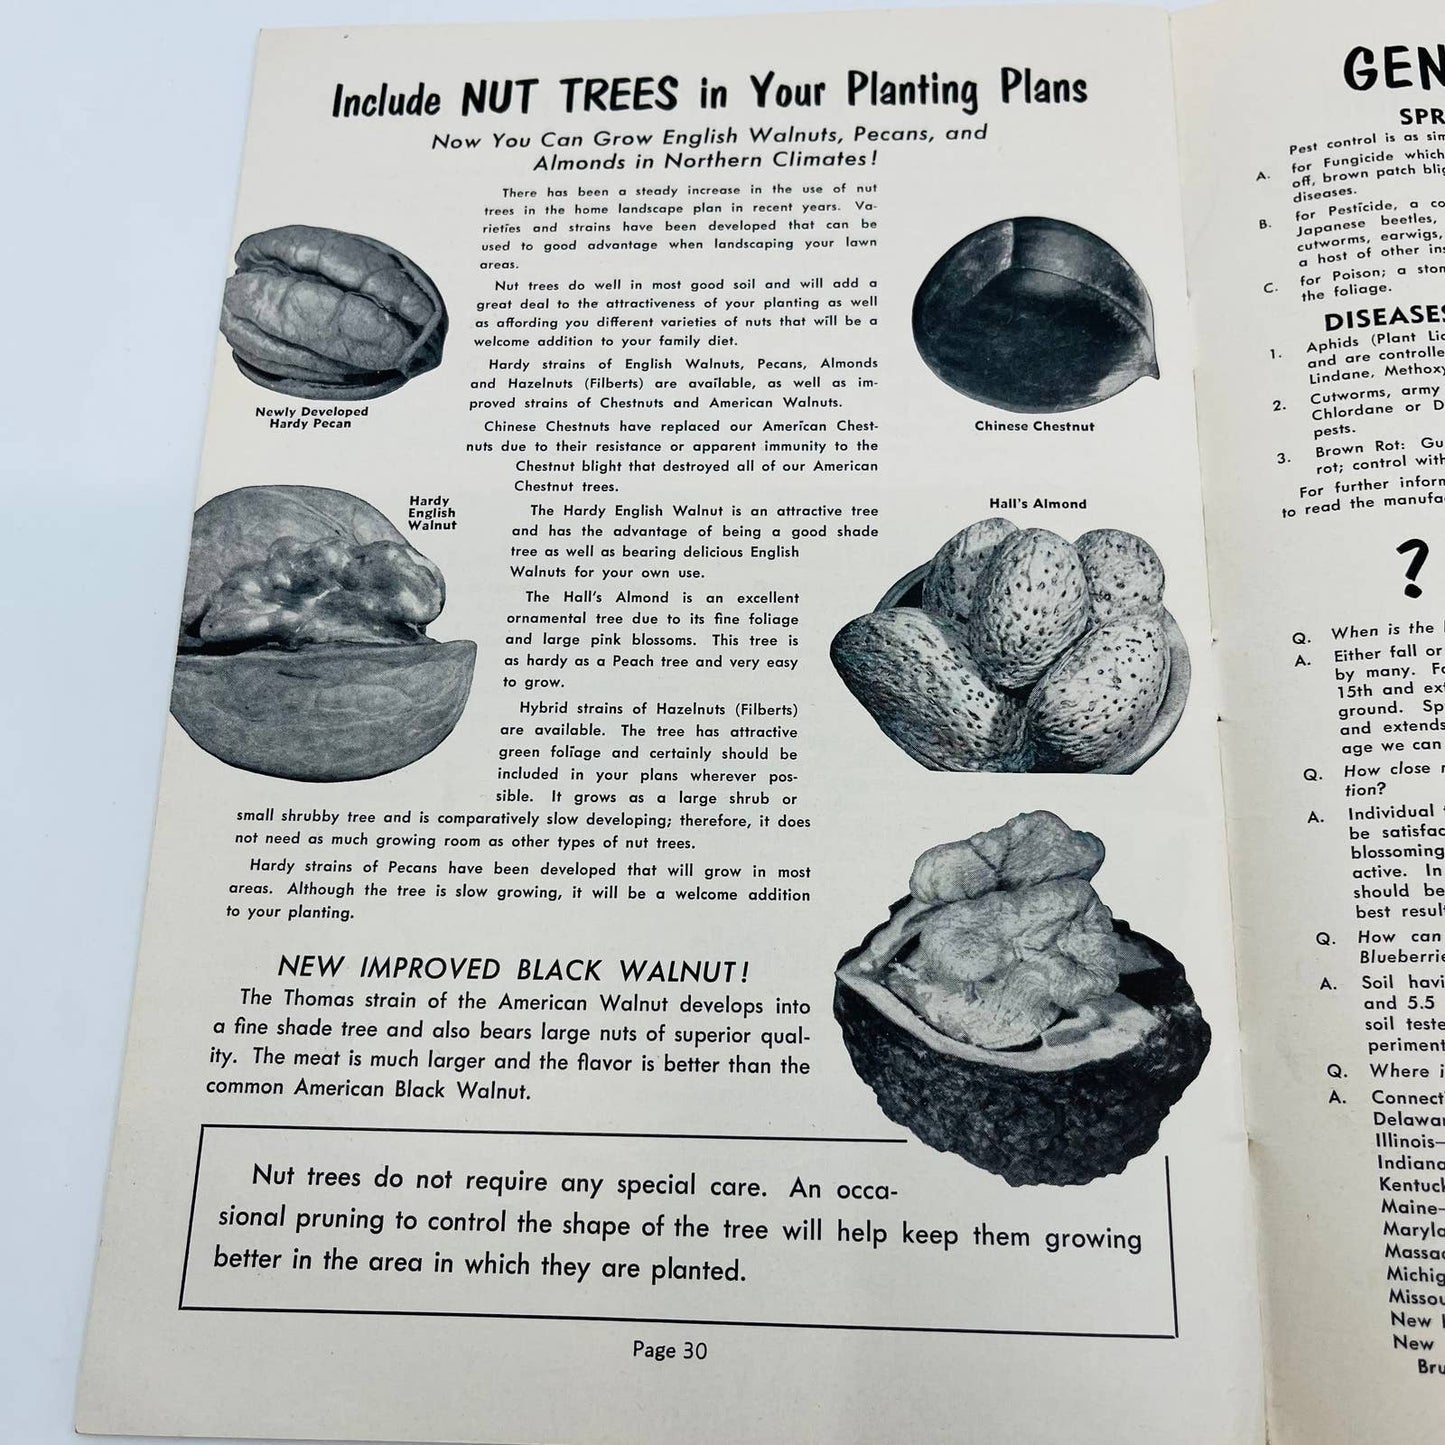 1950s Emlong Nurseries Stevensville MI Guide to Better Gardening Booklet BA4